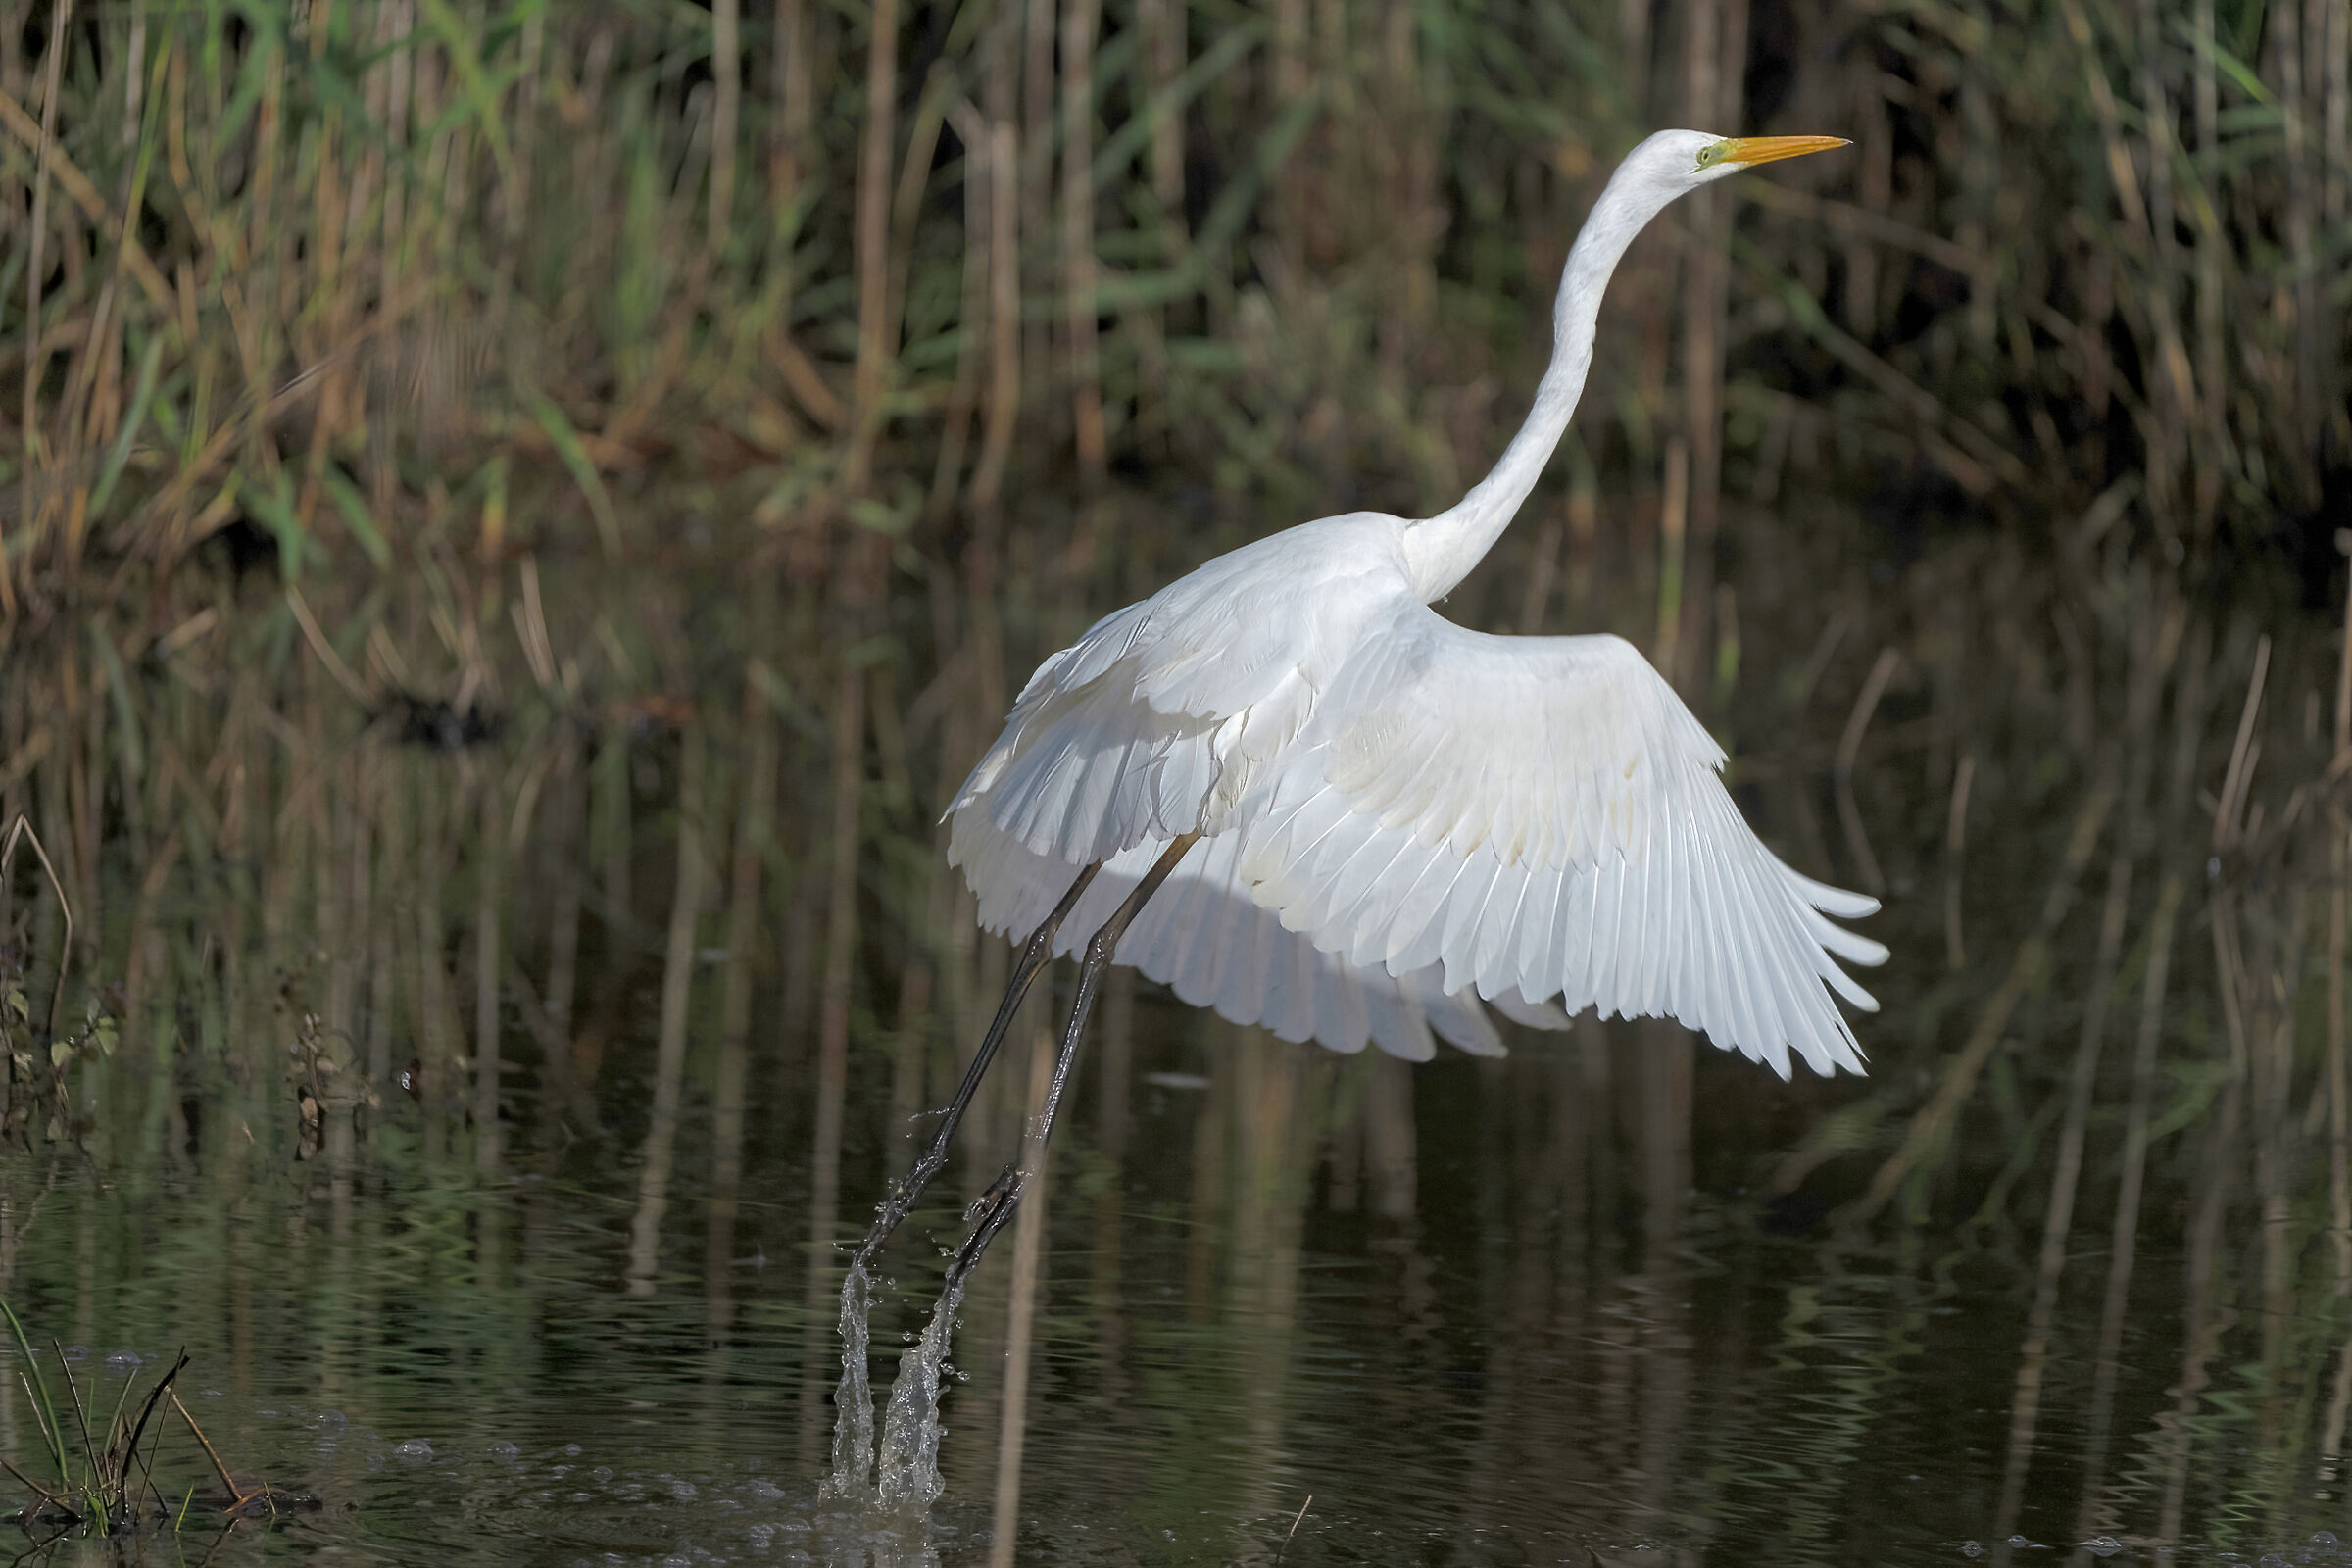 Great white heron taking off...